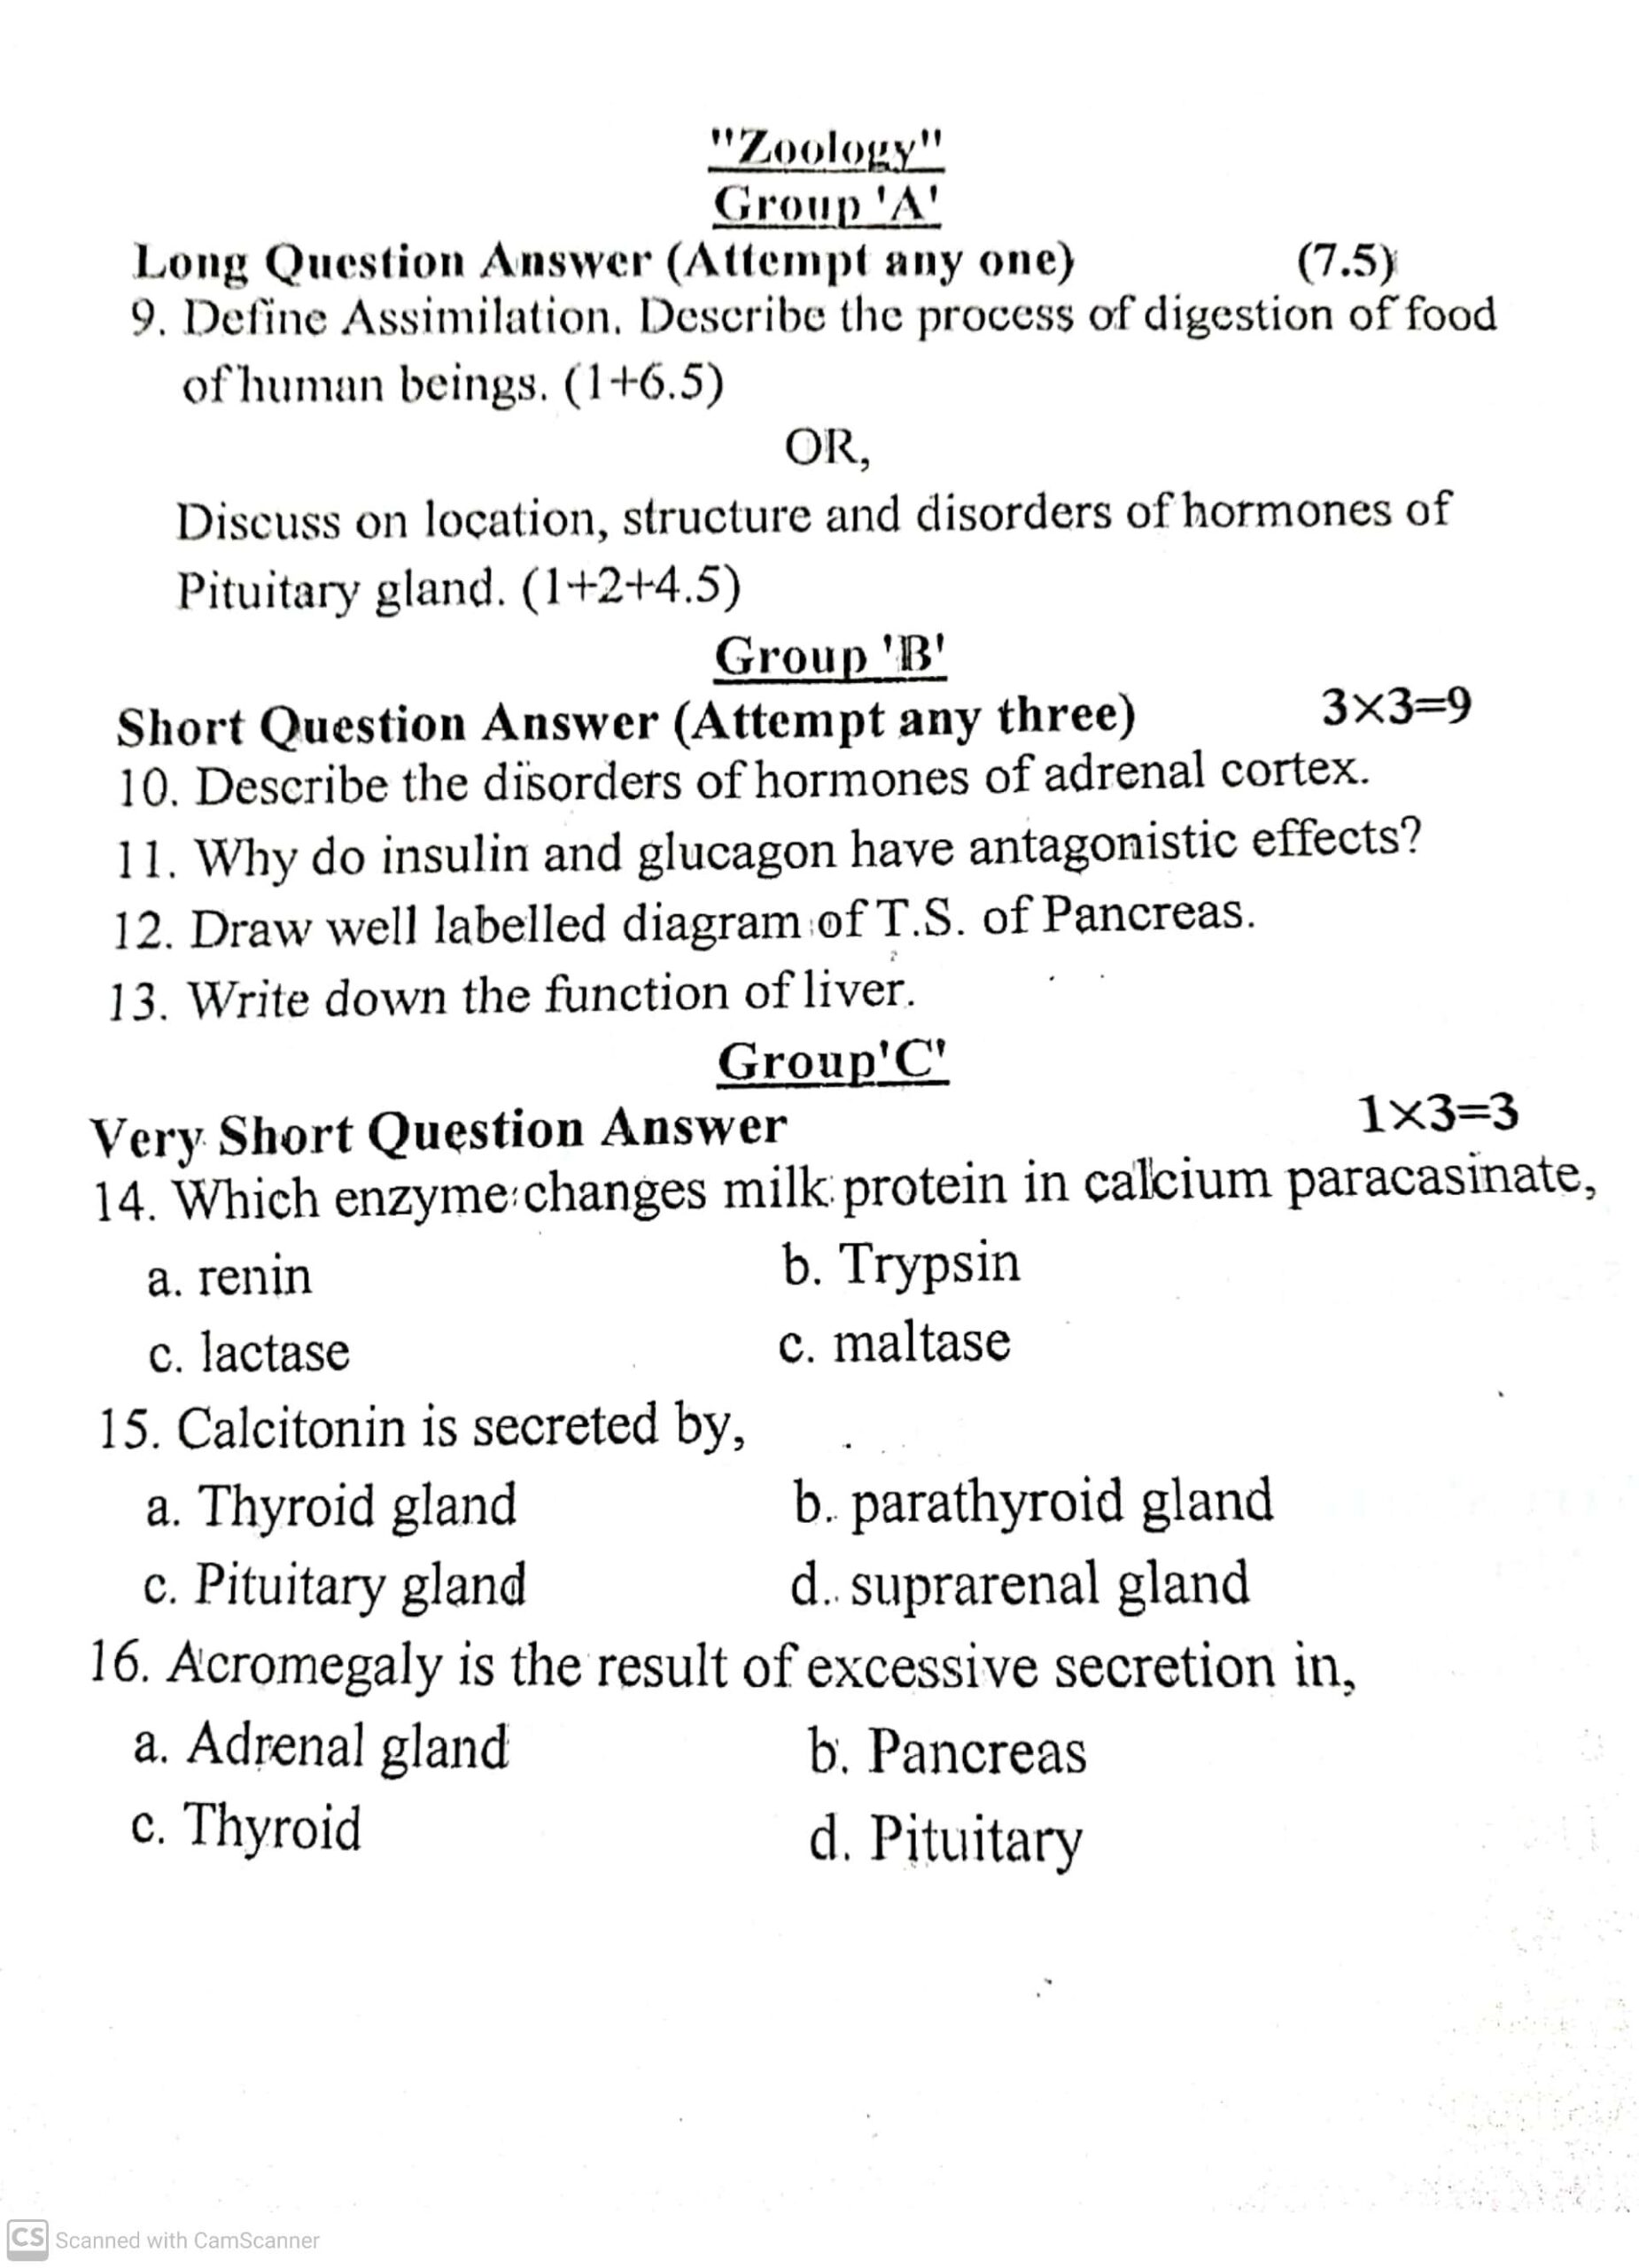 Class 12 Biology Internal Exam Question Paper 2079